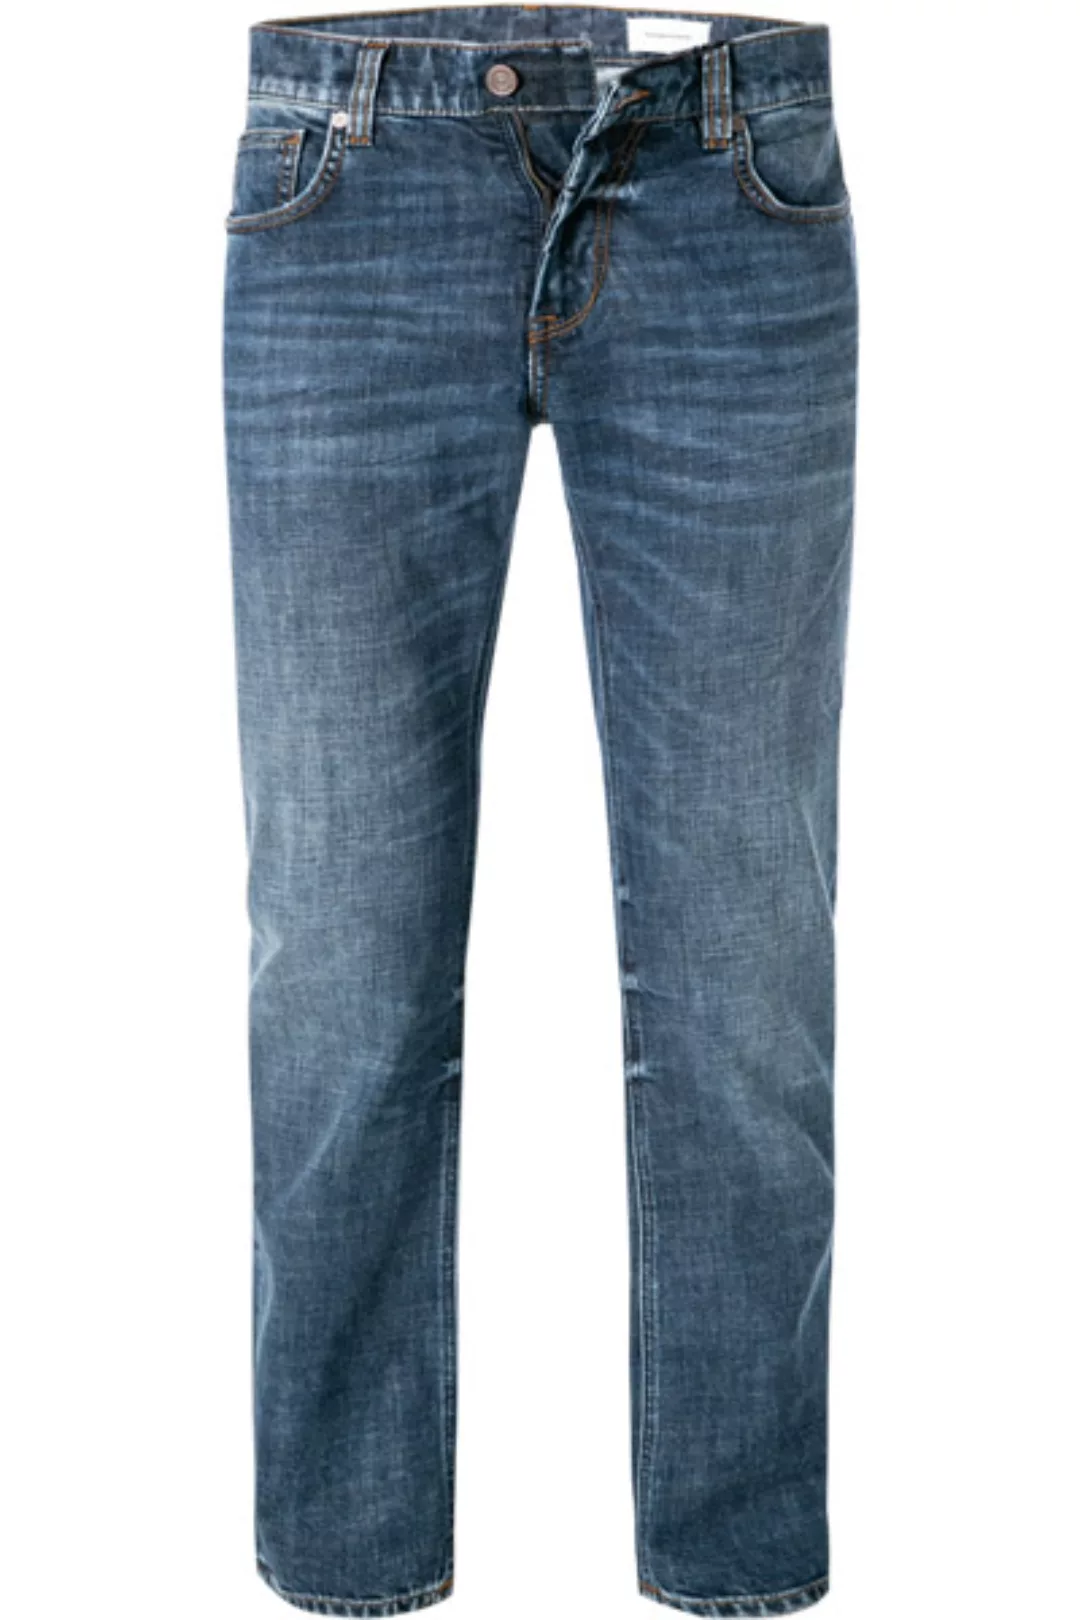 BALDESSARINI Jeans blau B1 16511.1412/6827 günstig online kaufen